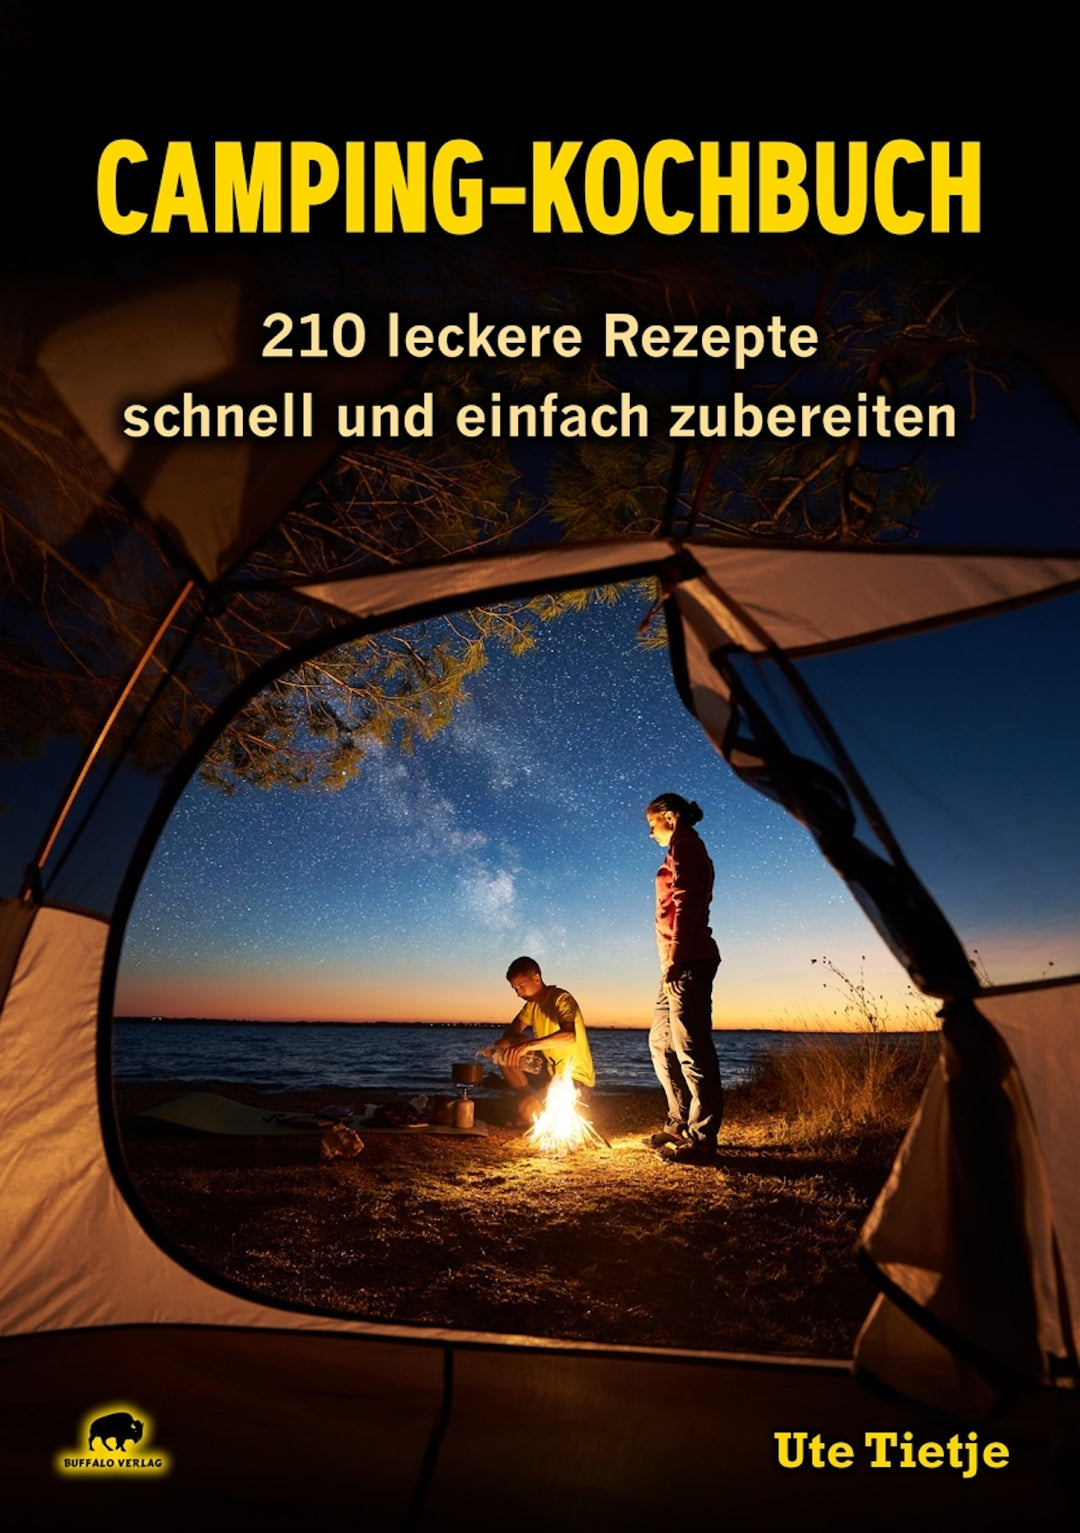 camping-kochbuch-buffalo-verlag-4hooves